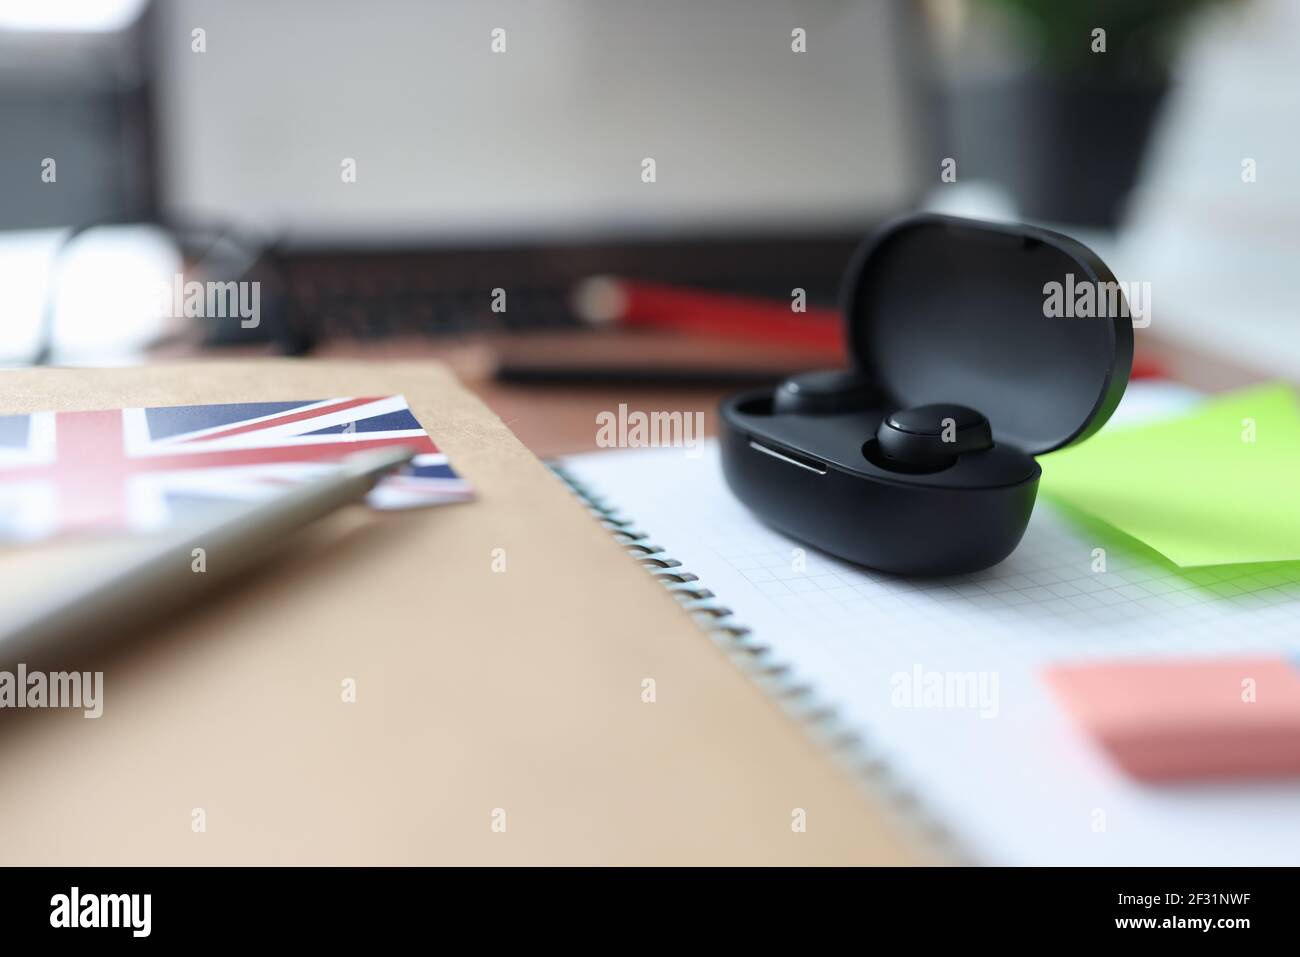 Le casque sans fil noir dans la boîte est placé sur une table à côté de bloc-notes et stylo Banque D'Images